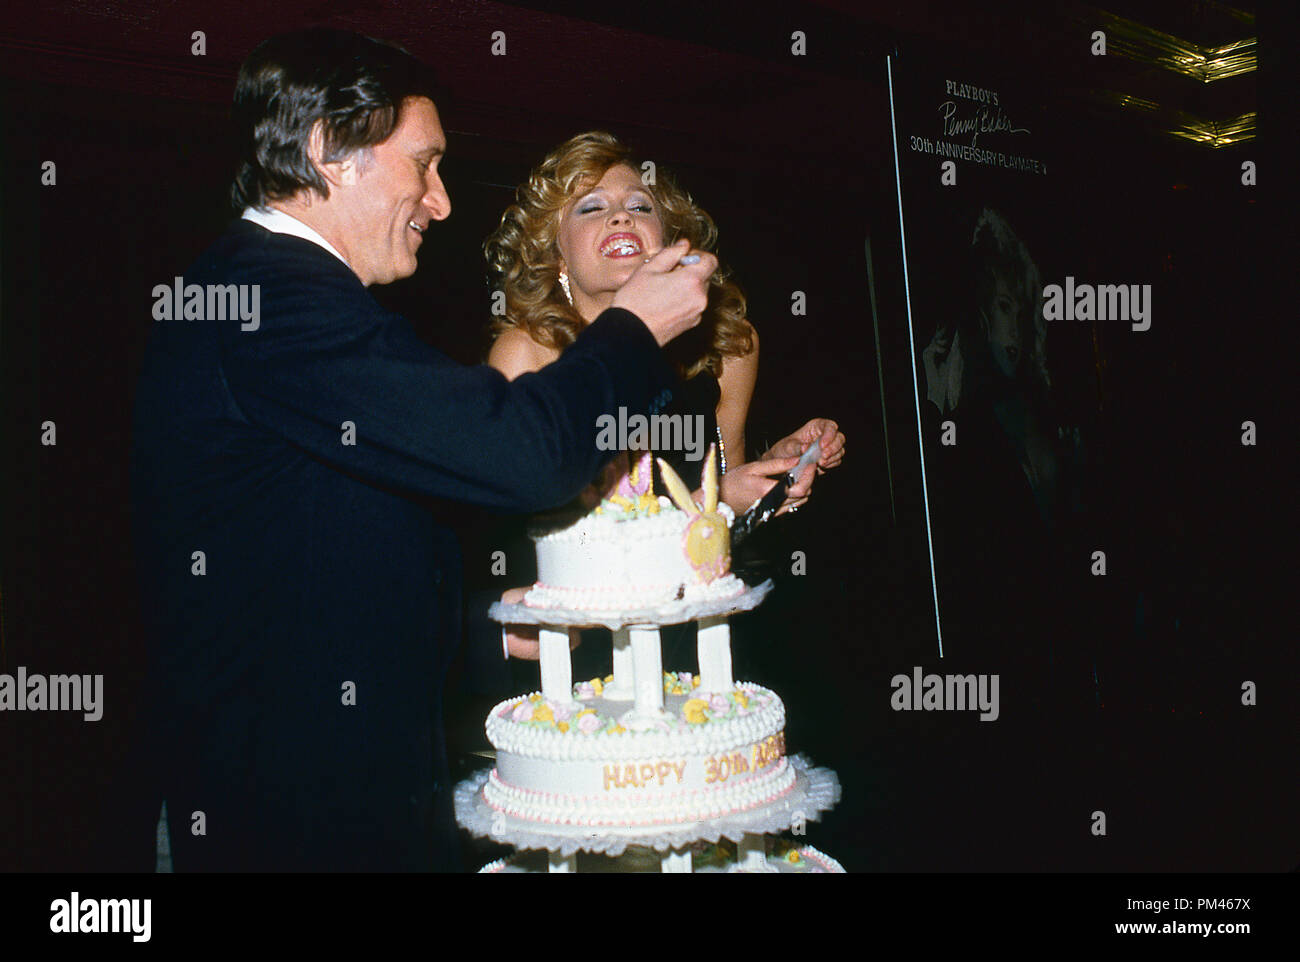 Hugh Hefner et Penny Baker à la question 30e anniversaire Playboy Party,1984. Référence # 1060 Fichier 016THA © CCR /Le Hollywood Archive - Tous droits réservés. Banque D'Images